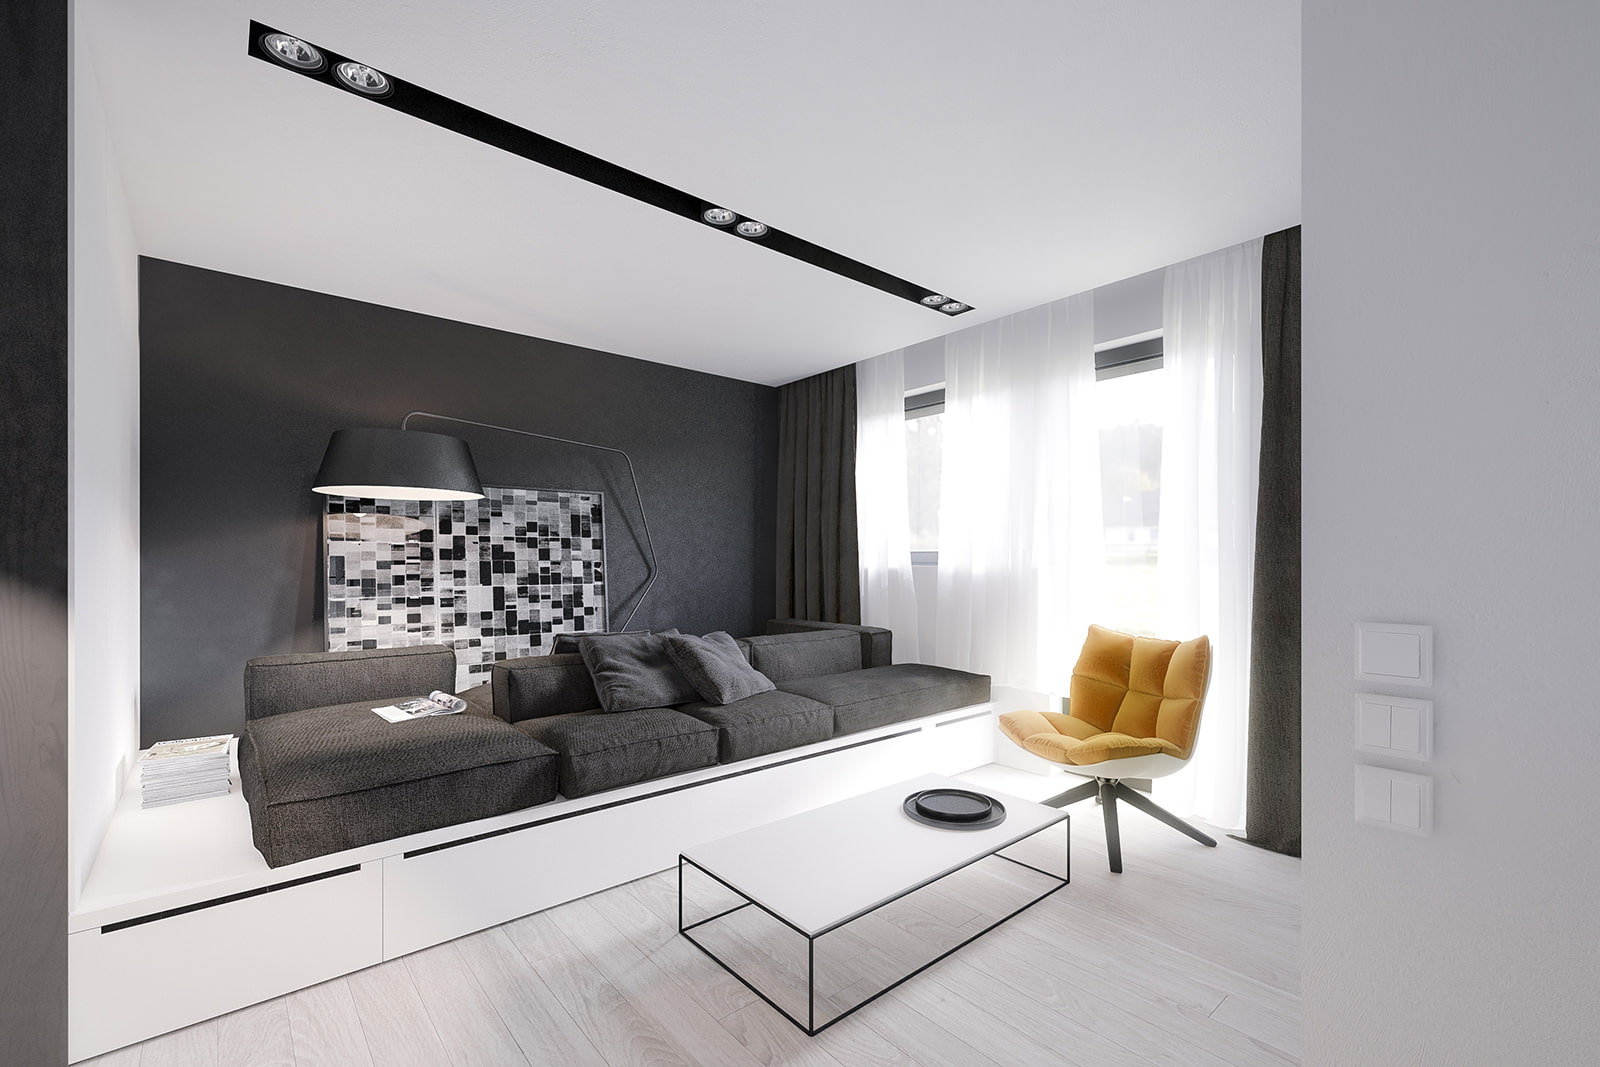 Современный ремонт квартир дизайн: Дизайн интерьера квартиры в современном стиле. Реальные фотографии 2019-2020